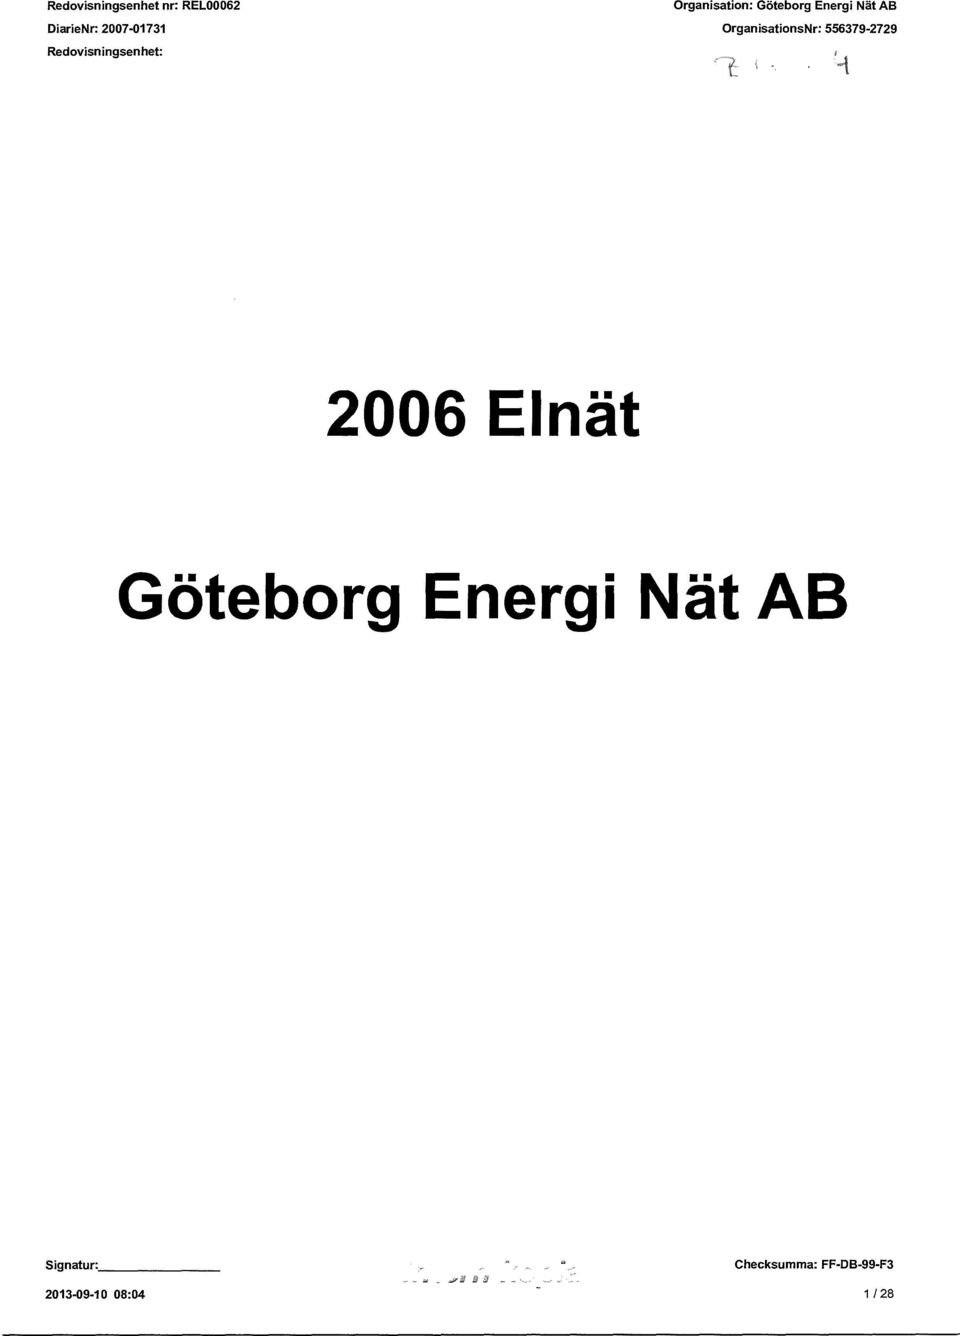 2006 Elnät Göteborg Energi Nät